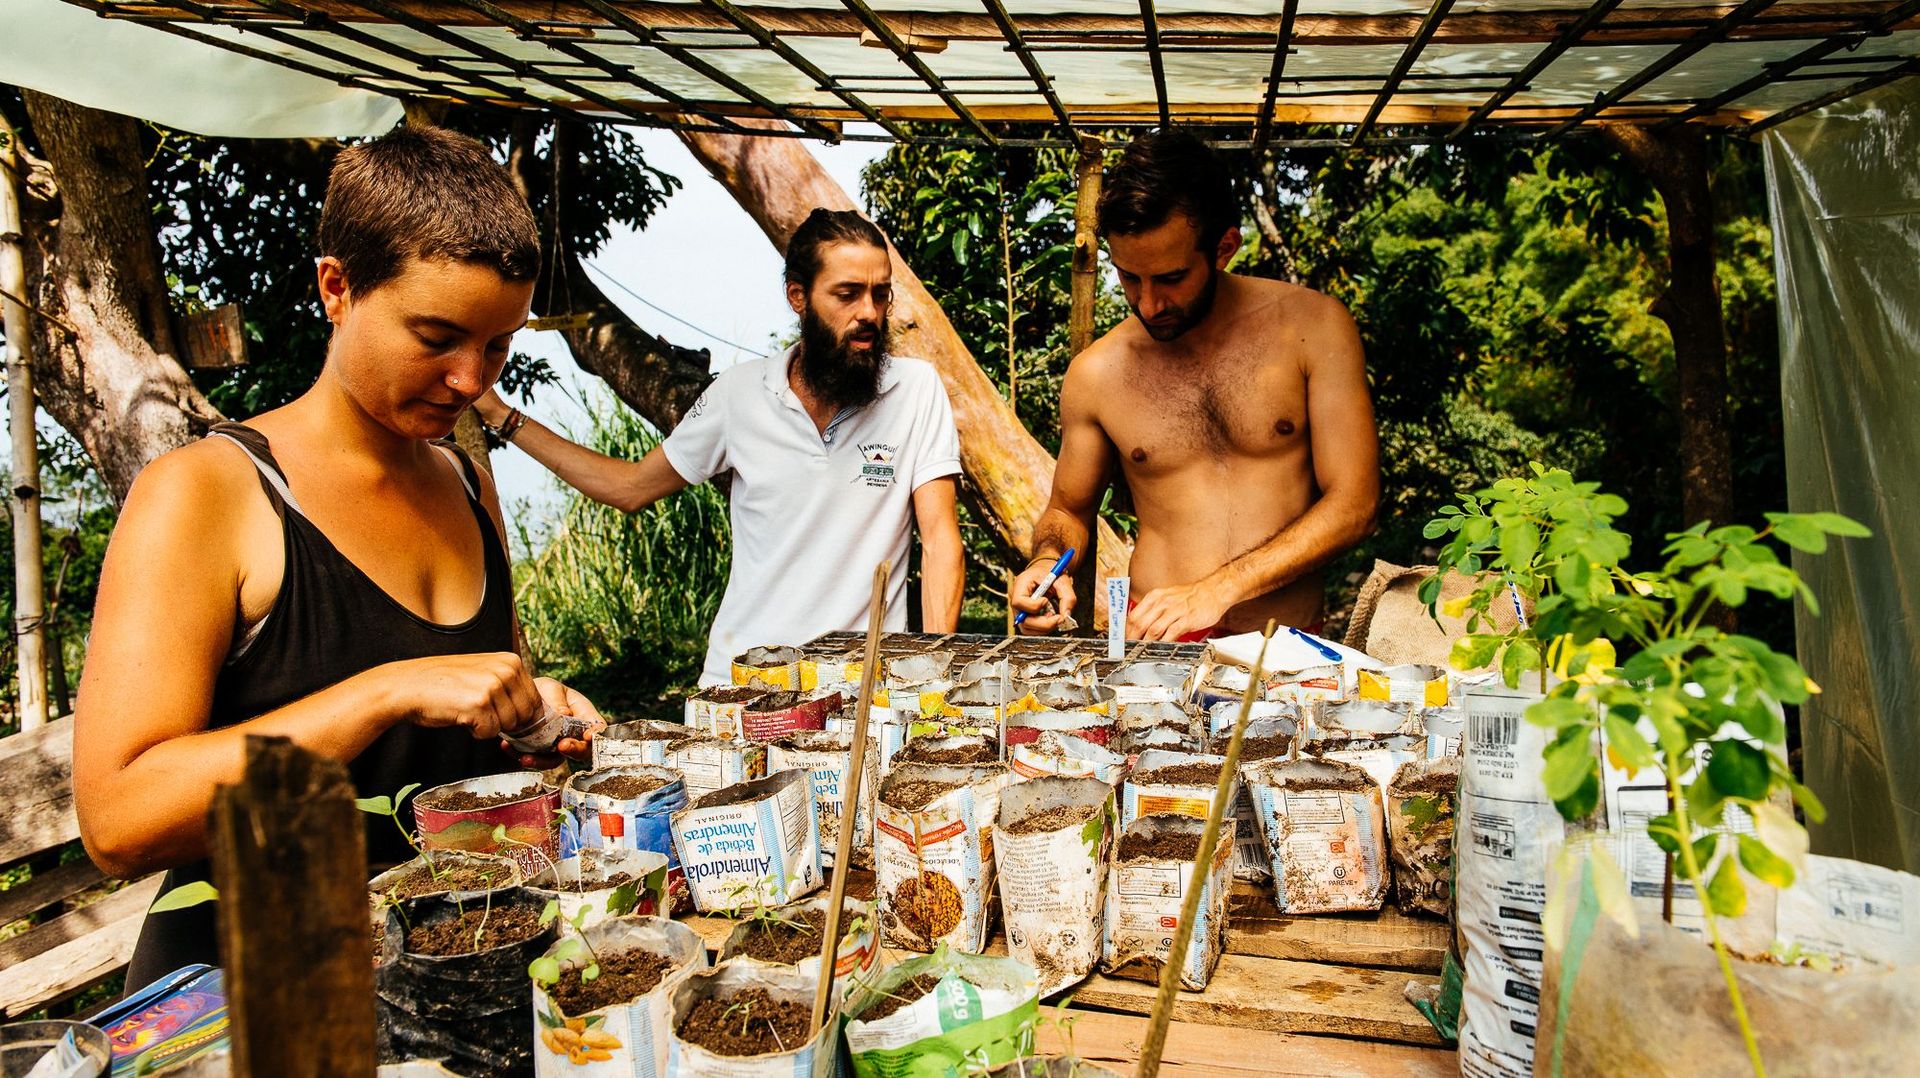 Loin des multinationales et de la mondialisation, Mundo Nuevo et ses volontaires cultivent leurs semences et leurs produits sur le modèle de la permaculture.